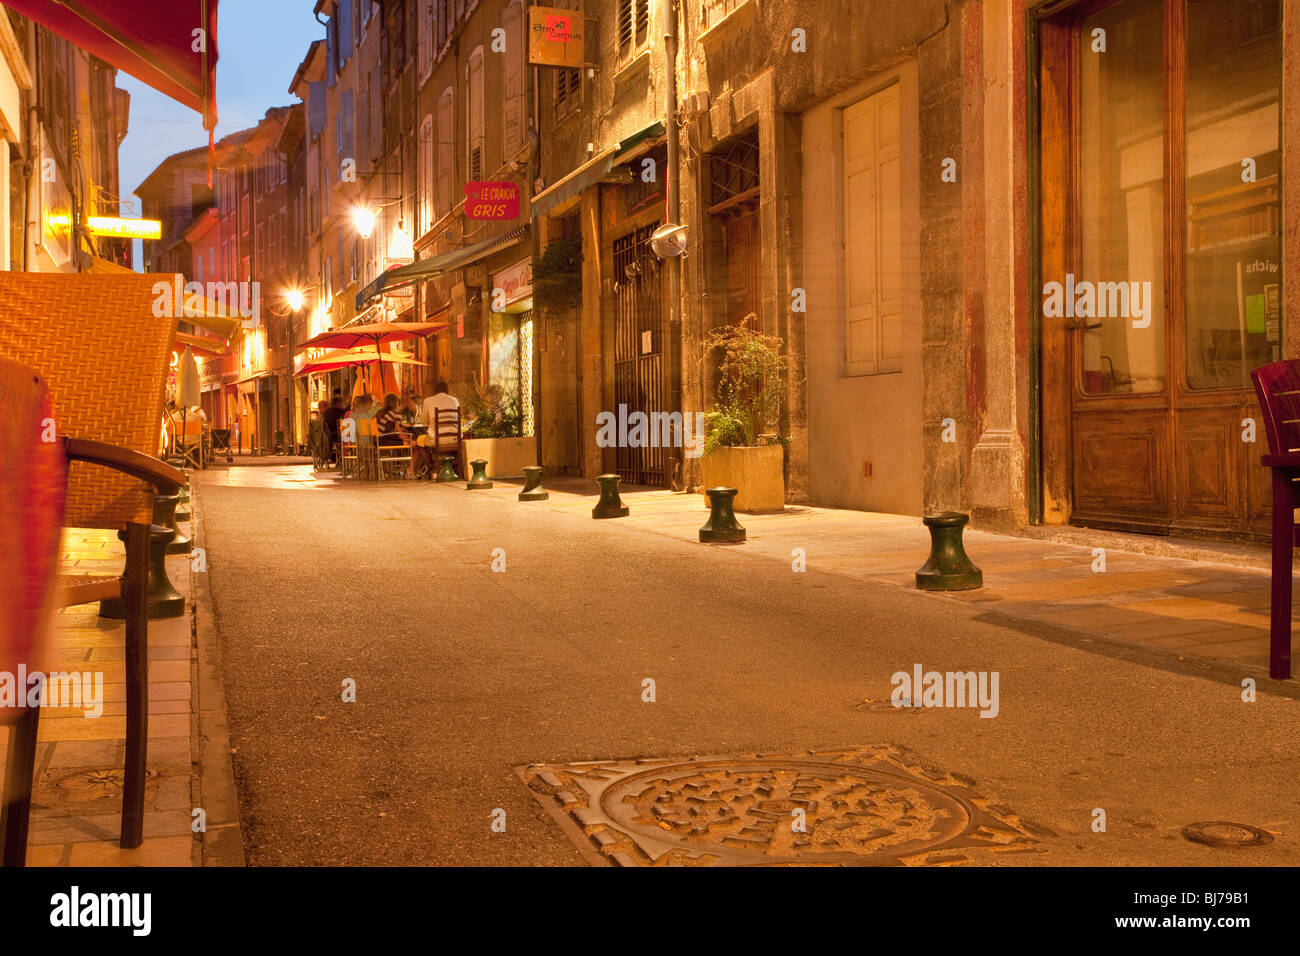 Ambiance crépusculaire dans une charmante allée de Sisteron avec des cafés de rue confortables Banque D'Images